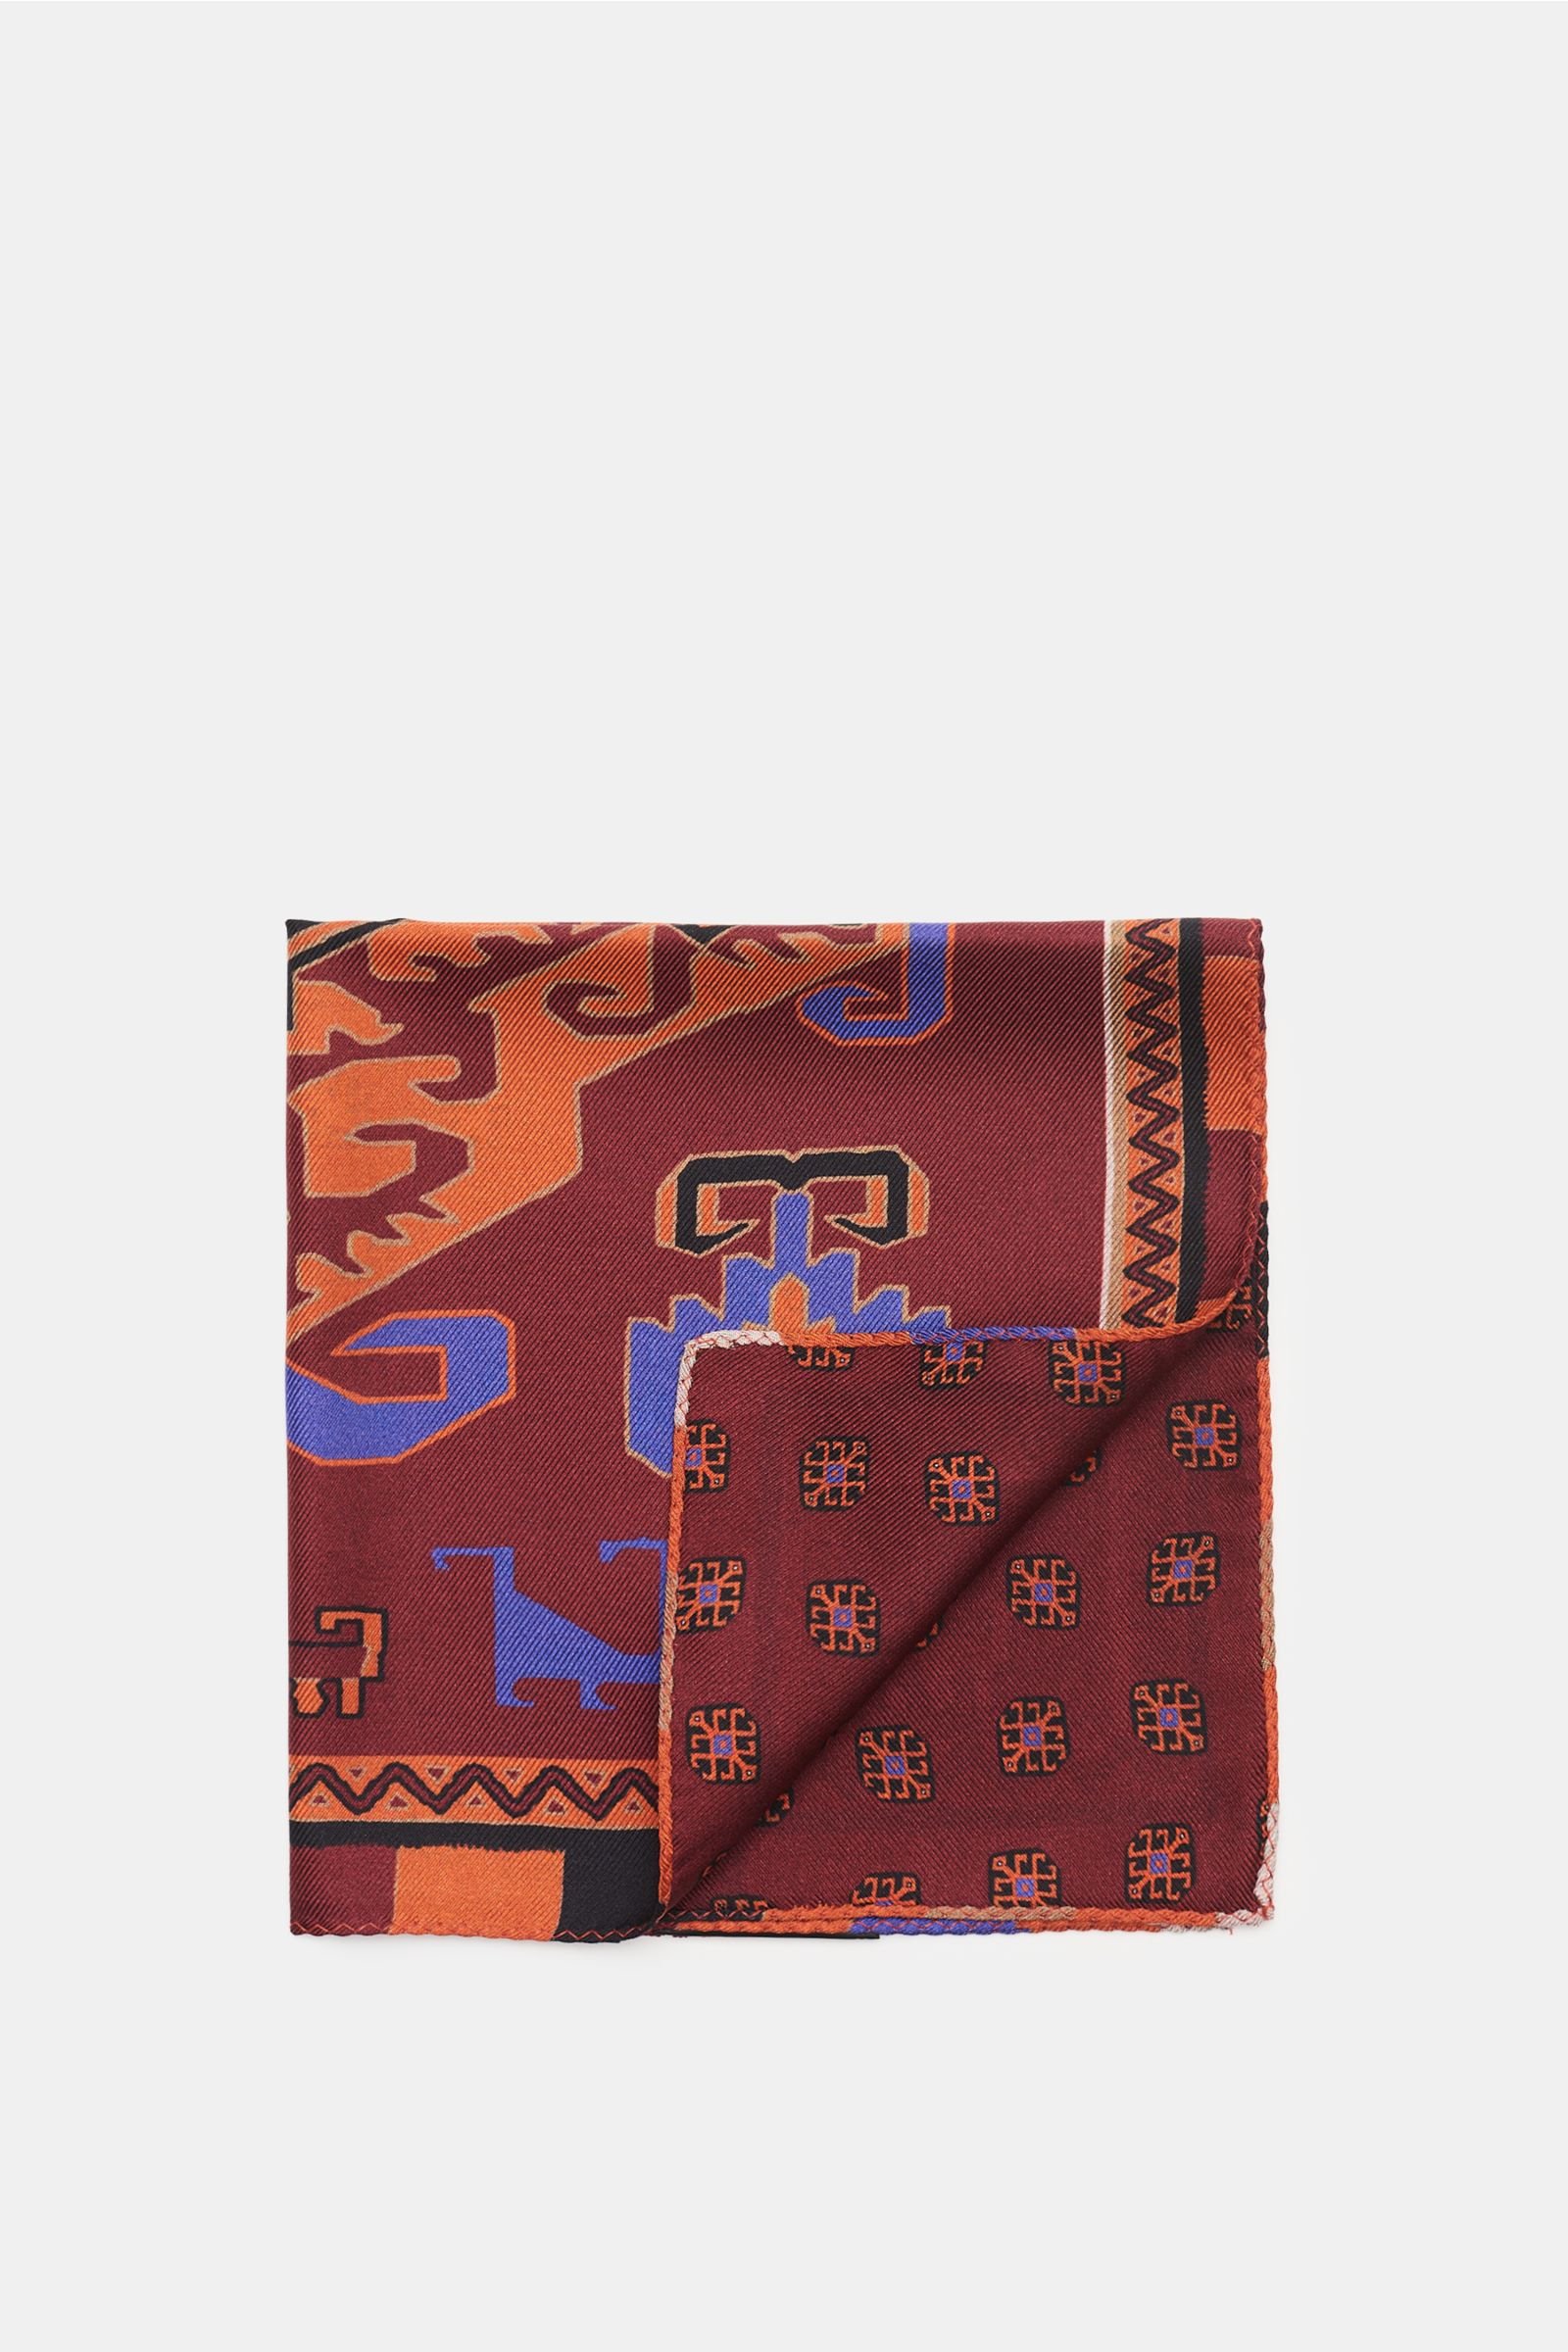 Pocket square burgundy/orange, patterned